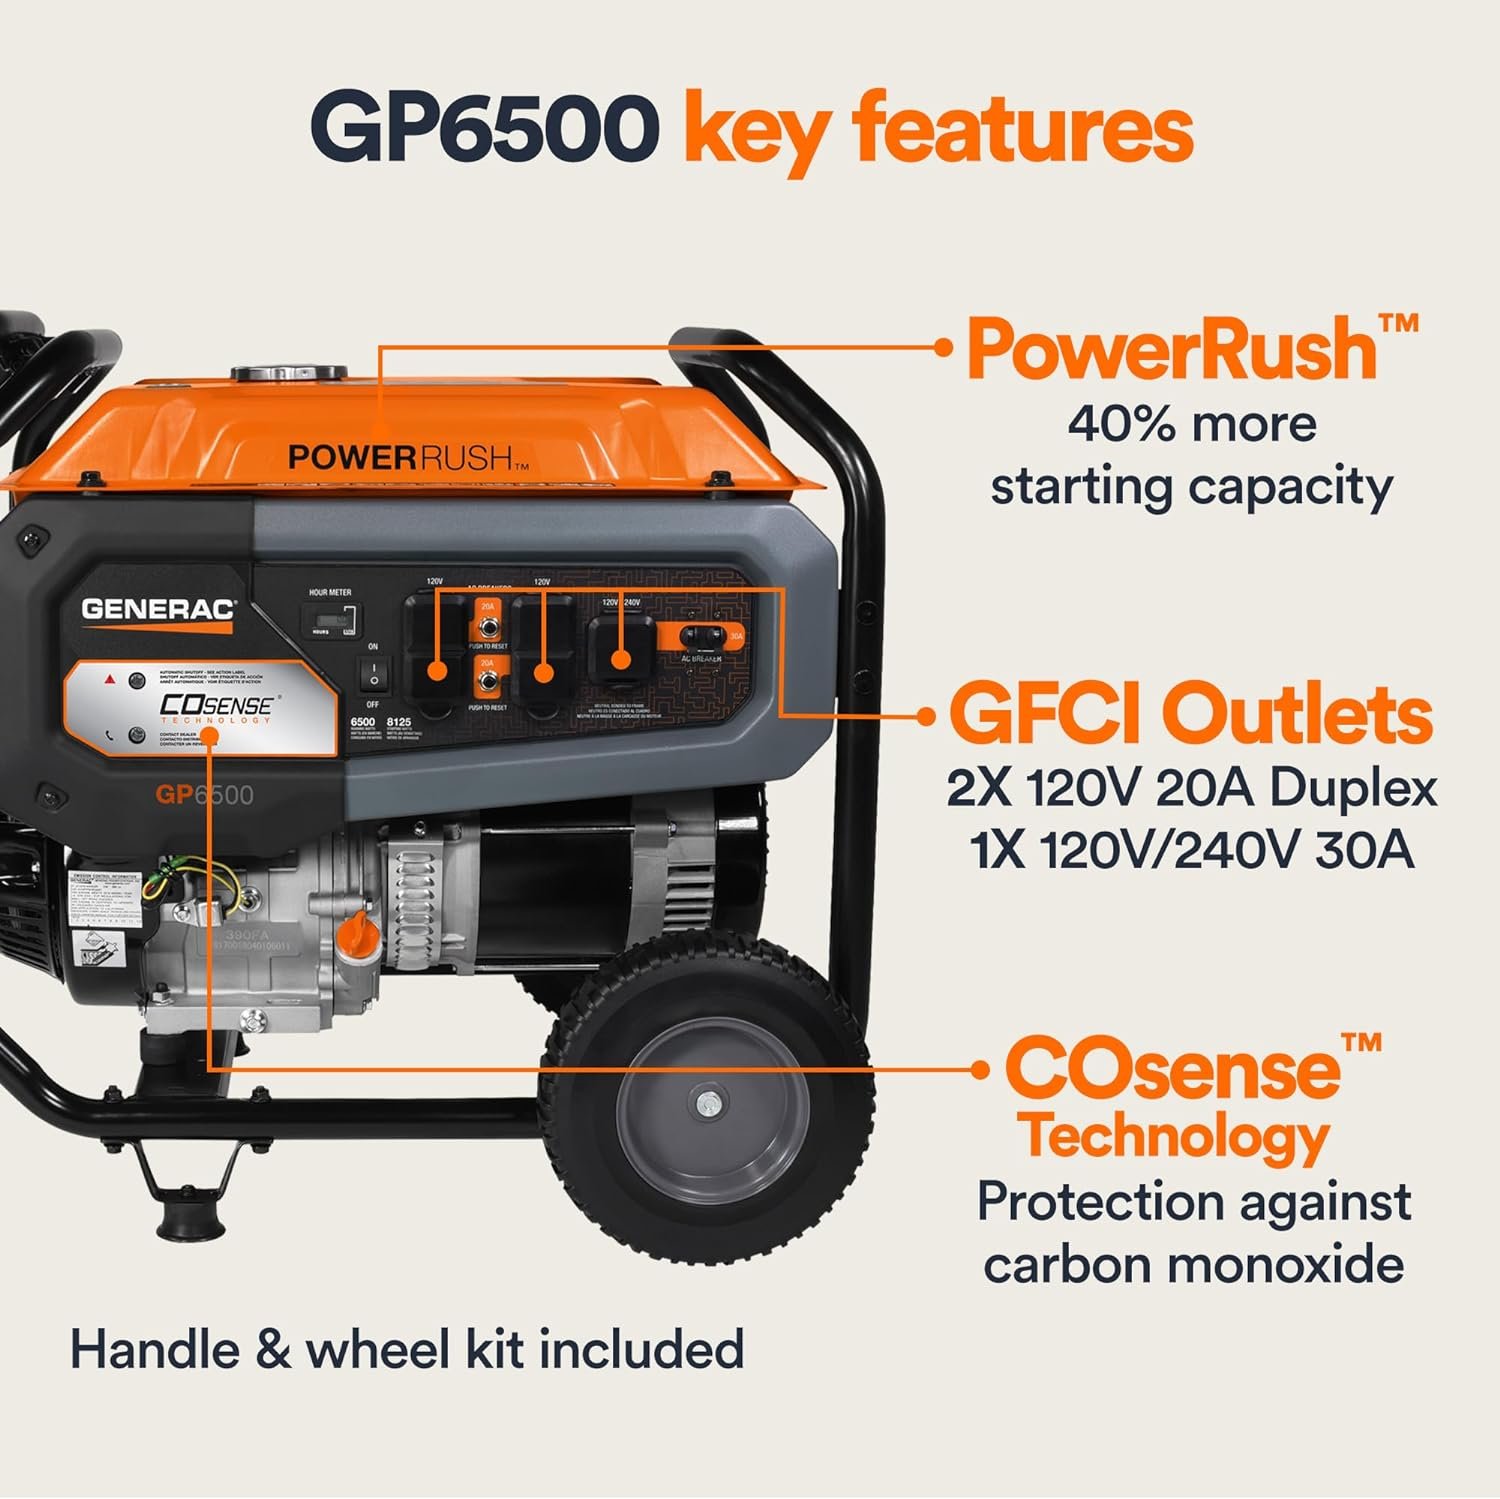 Generac GP6500 Portable Generator Review